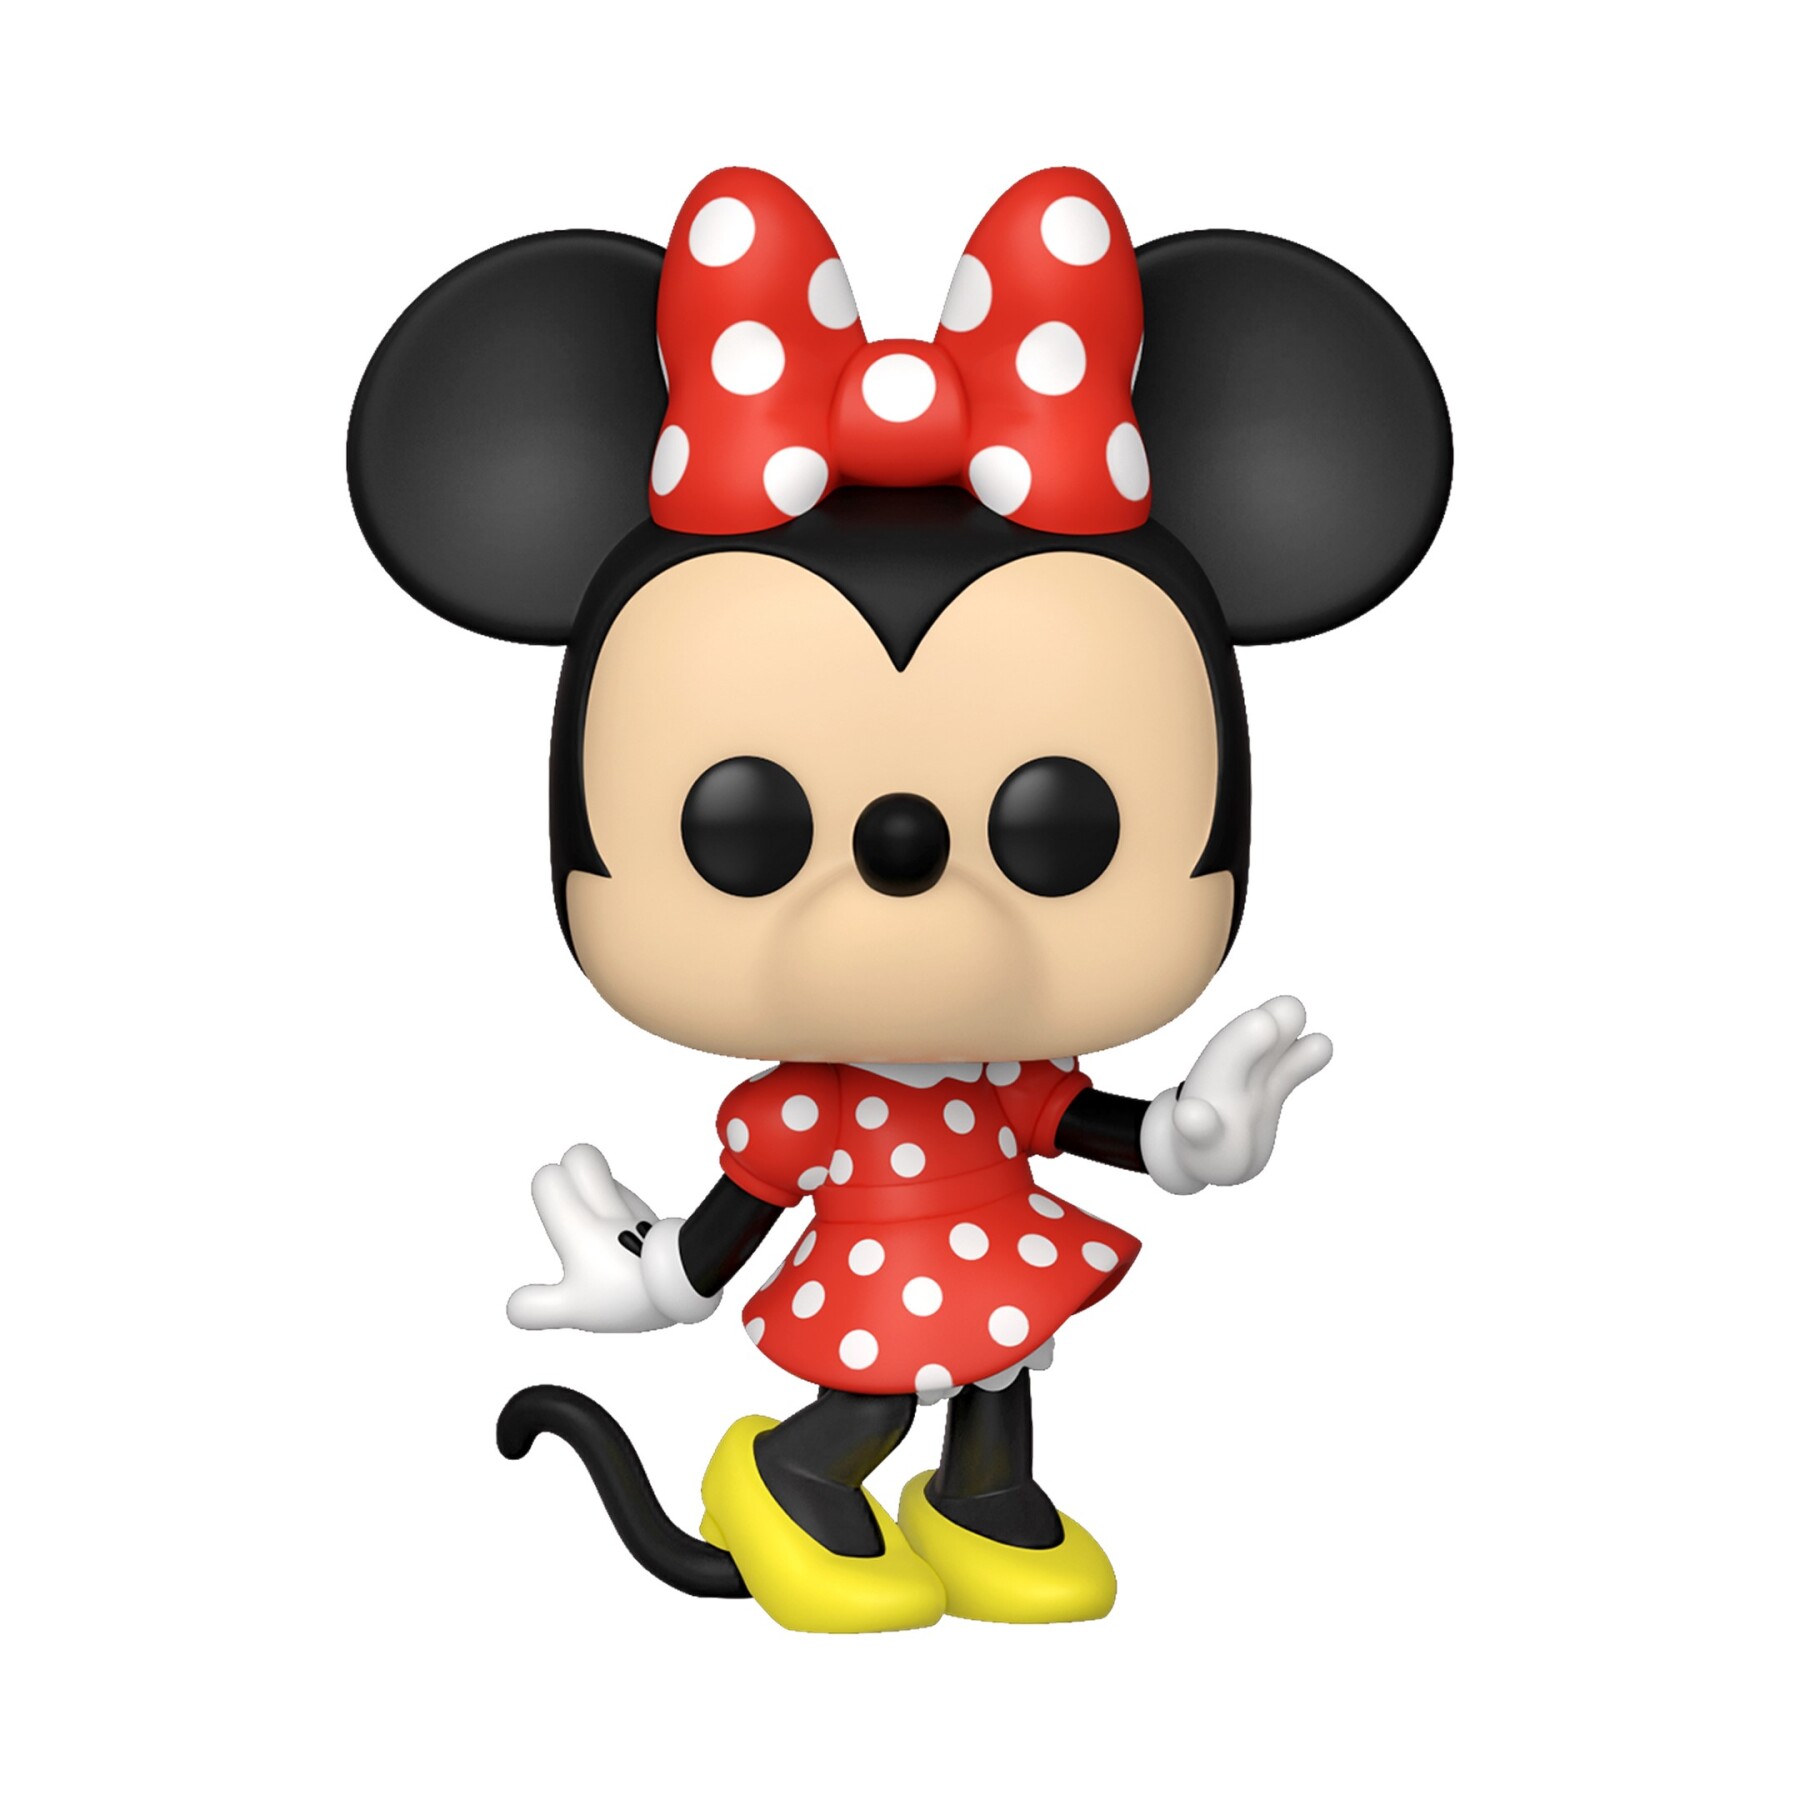 Funko POP! Minnie - Mickey & Friends #1188 - Funko